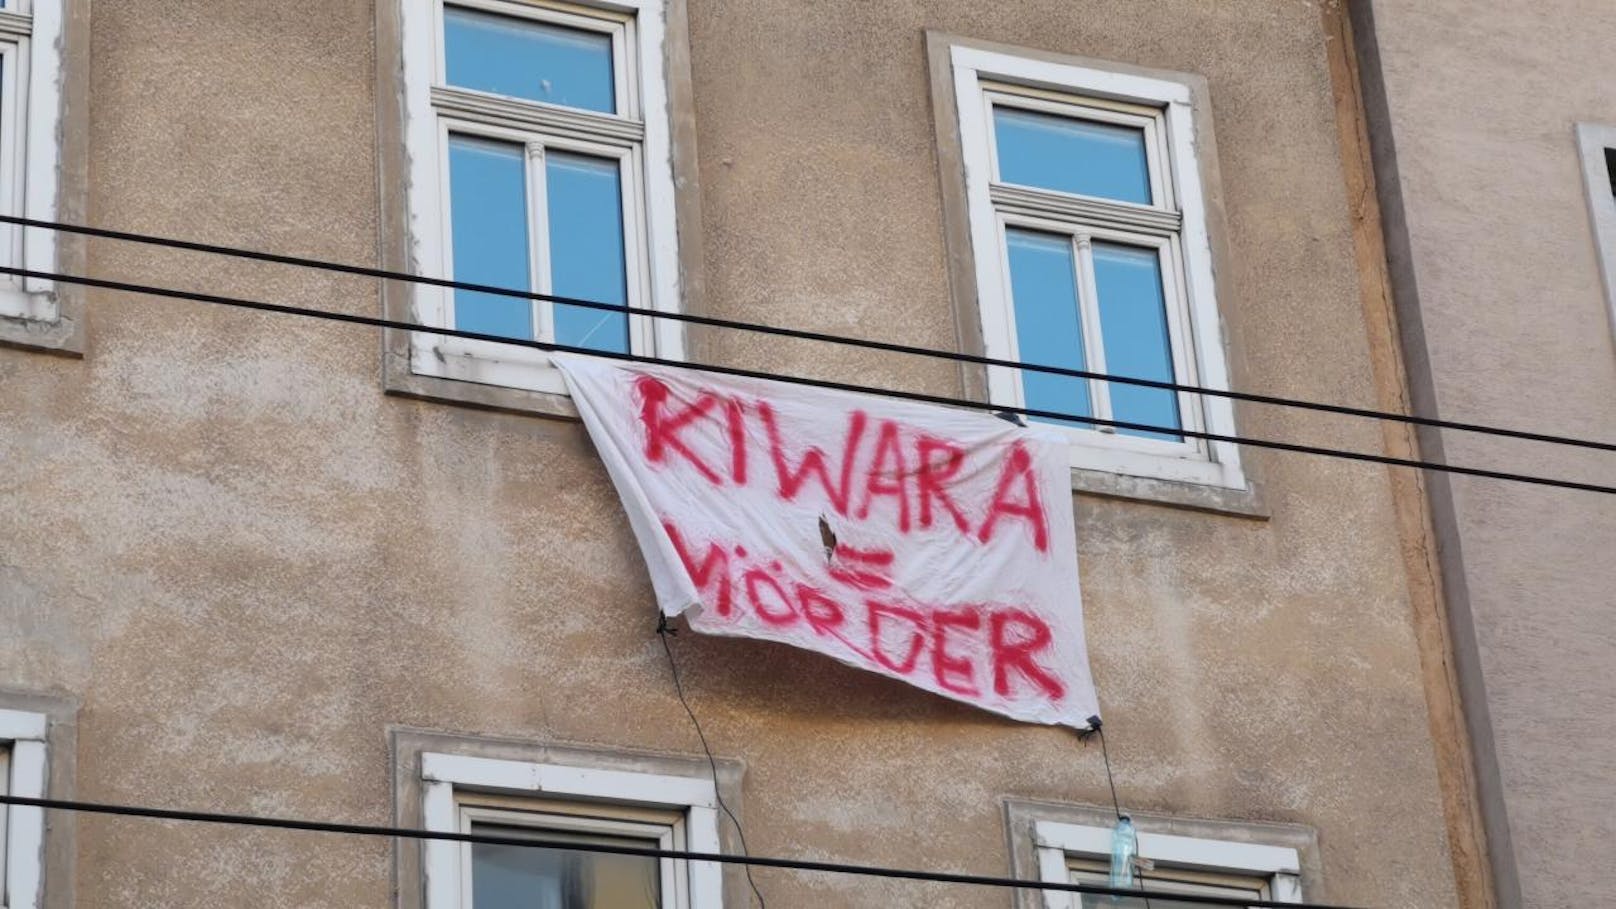 Beim Lokalaugenschein in der Früh scheint sich die Behauptung zu bewahrheiten: Das heruntergekommene Haus in Wien-Hernals ist mit Transparenten verhängt, auf denen Parolen wie "Kiwara = Mörder" gemalt sind.